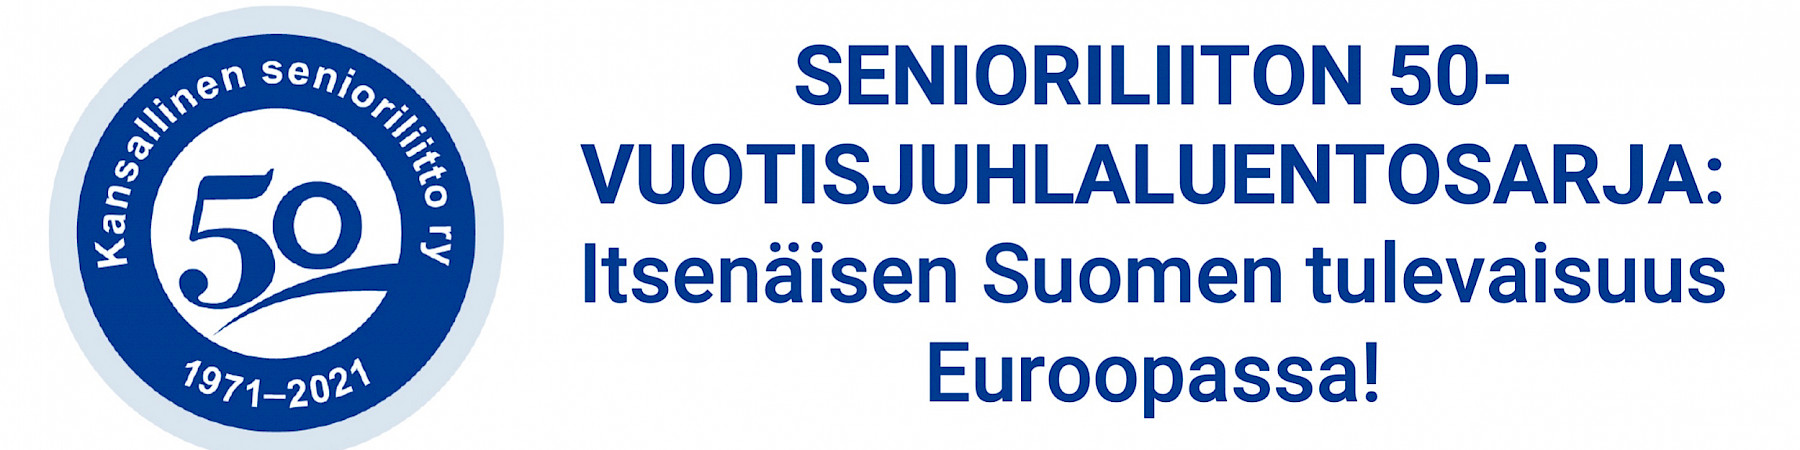 Ilmoittaudu 8.12. juhlaluennolle! Aiheena itsenäisen Suomen tulevaisuus Euroopassa!